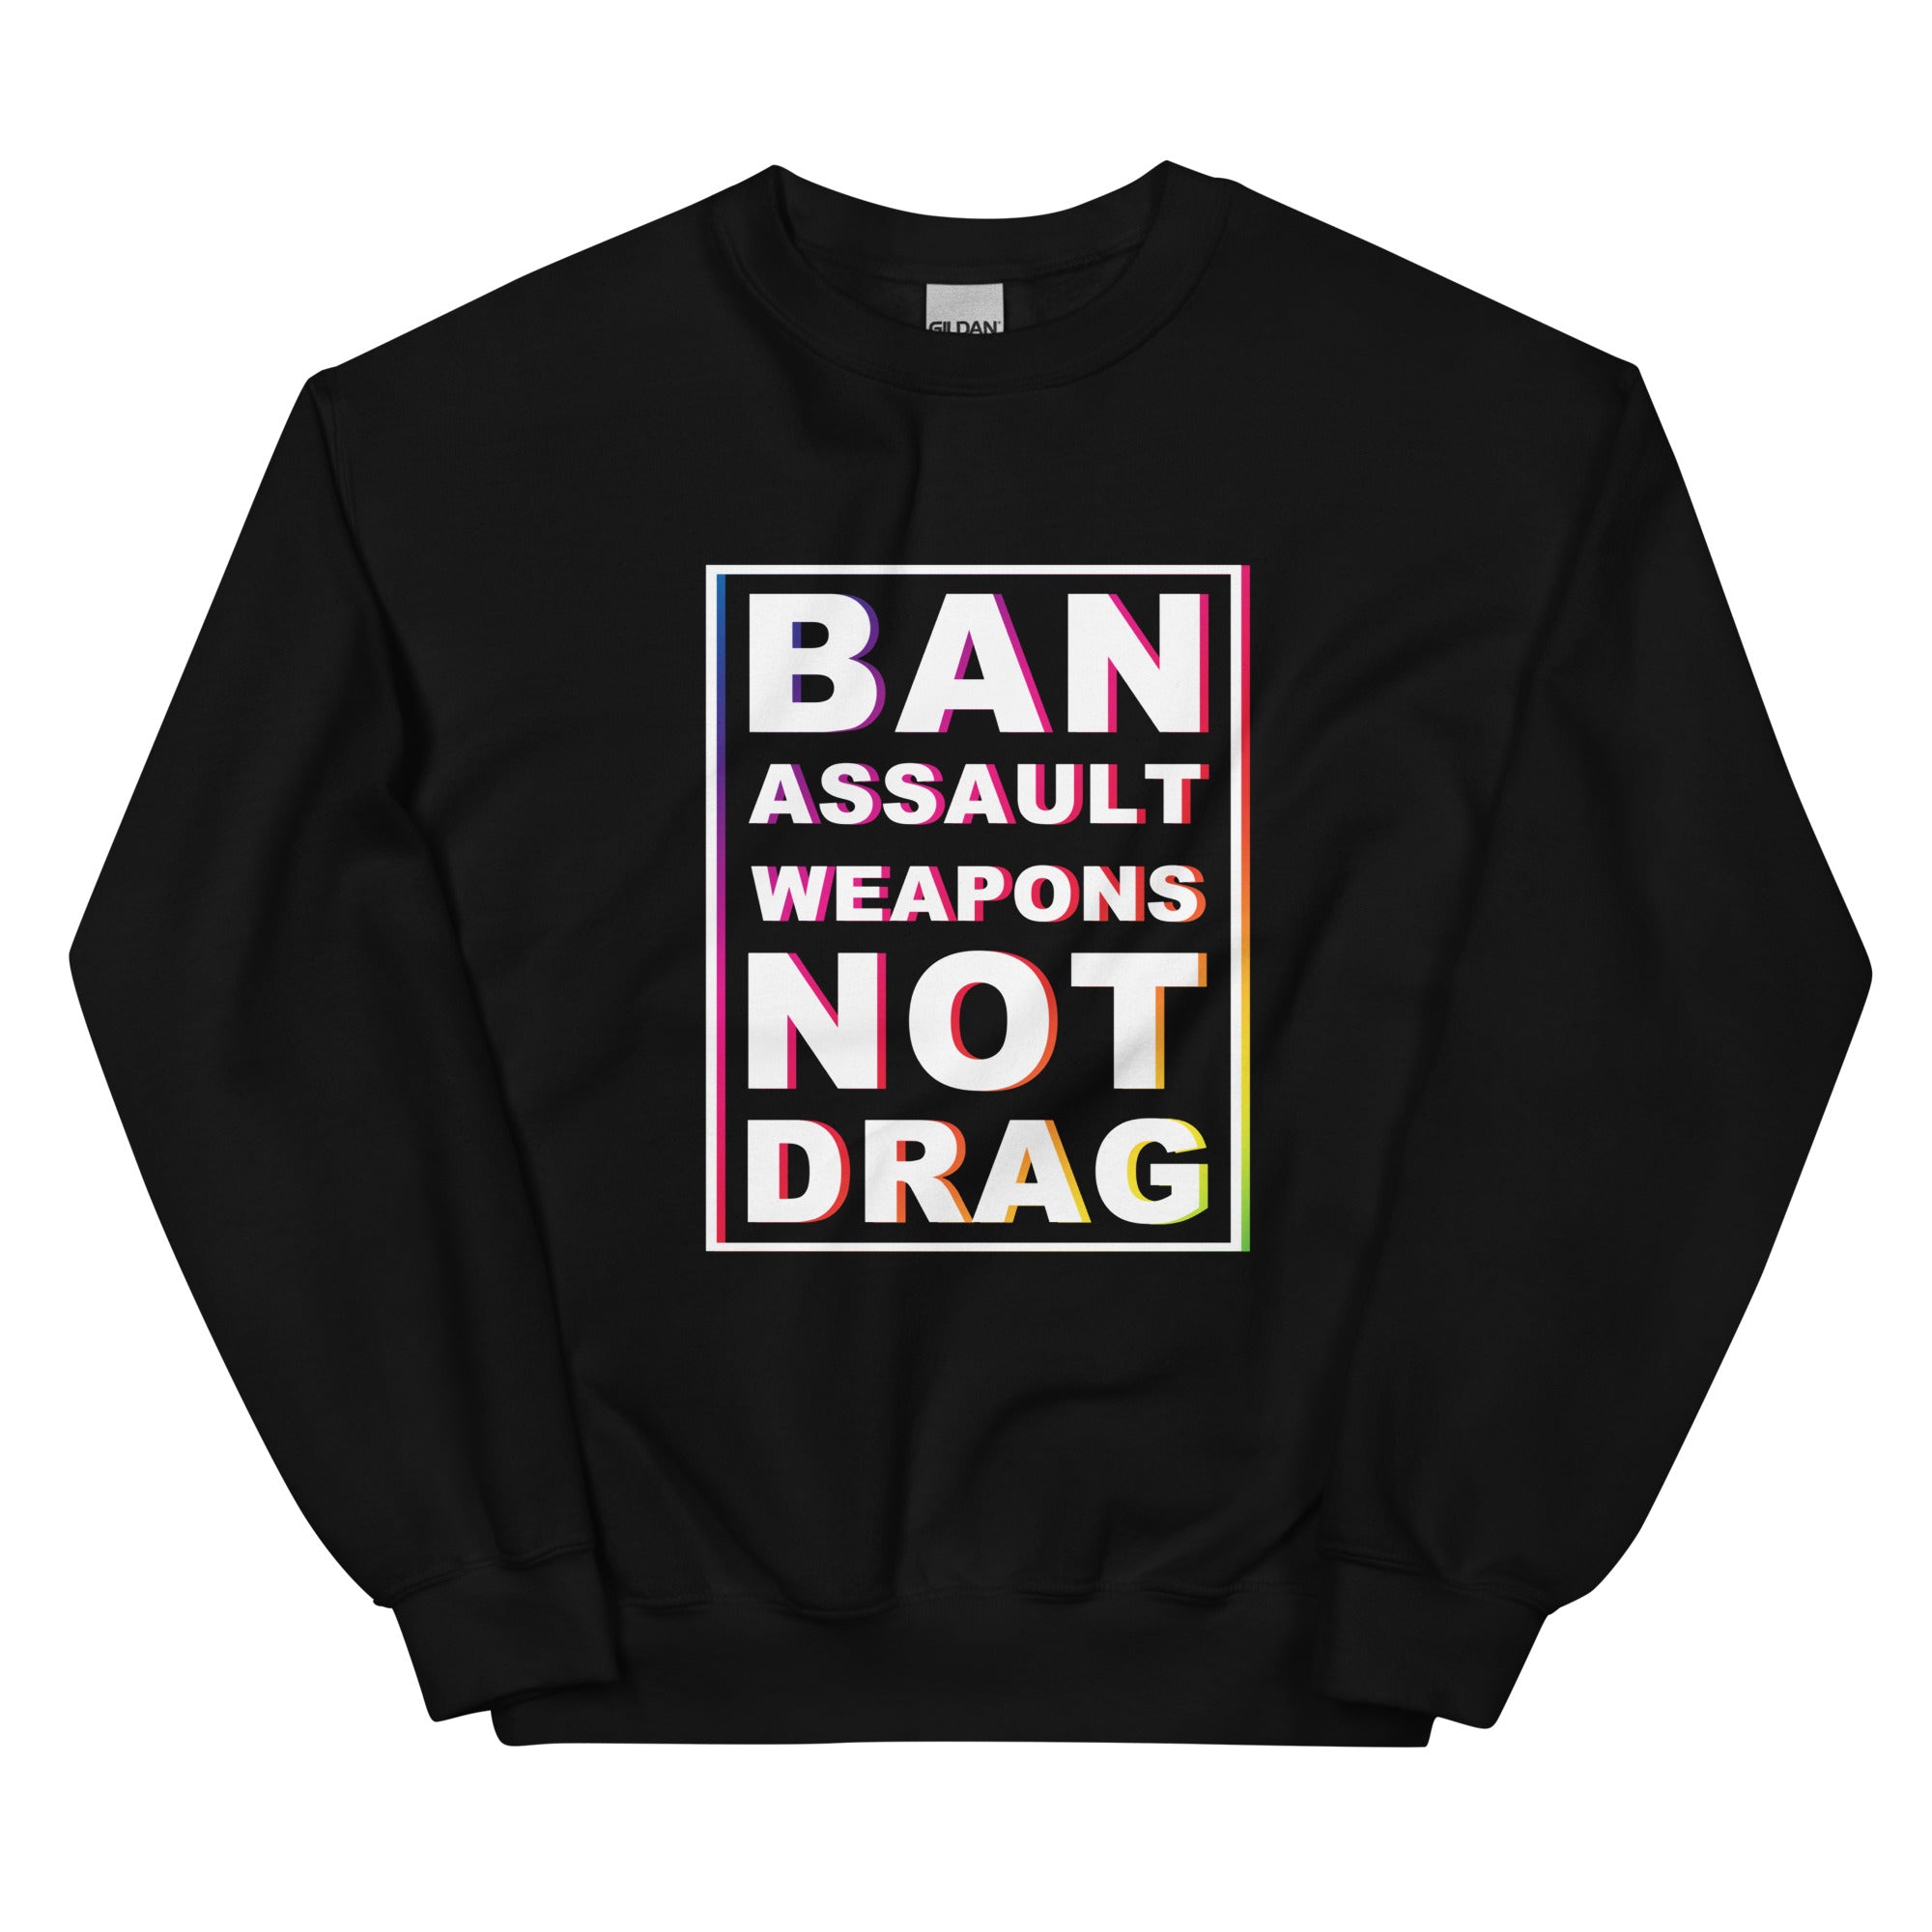 Not Drag Sweatshirt